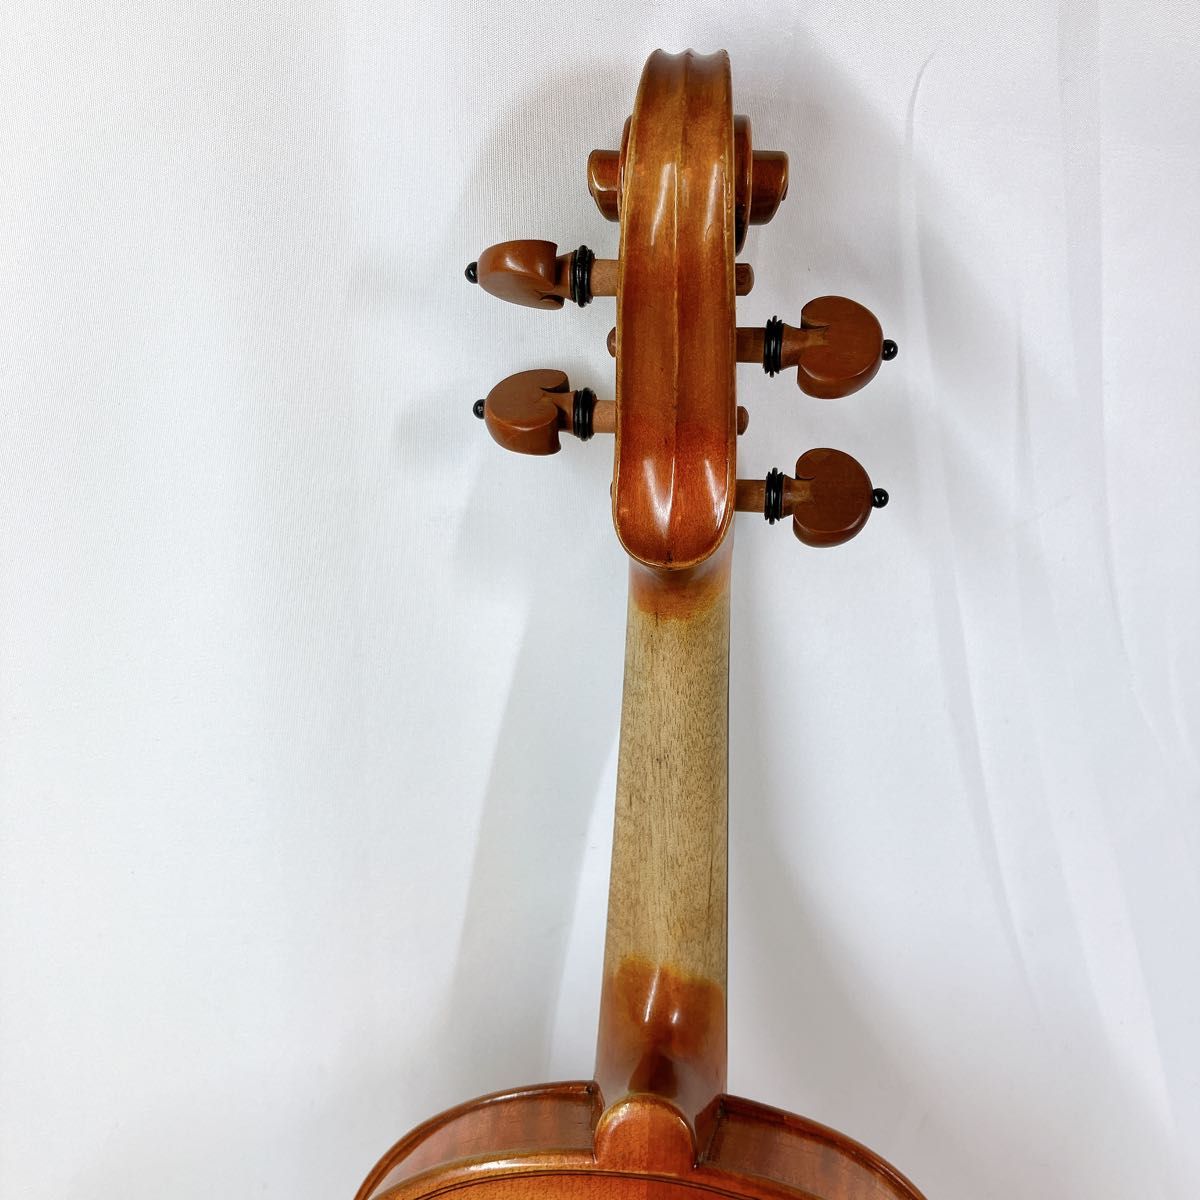 SUZUKI バイオリン No.280 4/4 1990 ワックス済 ヴァイオリン 弦楽器 弓 スズキ